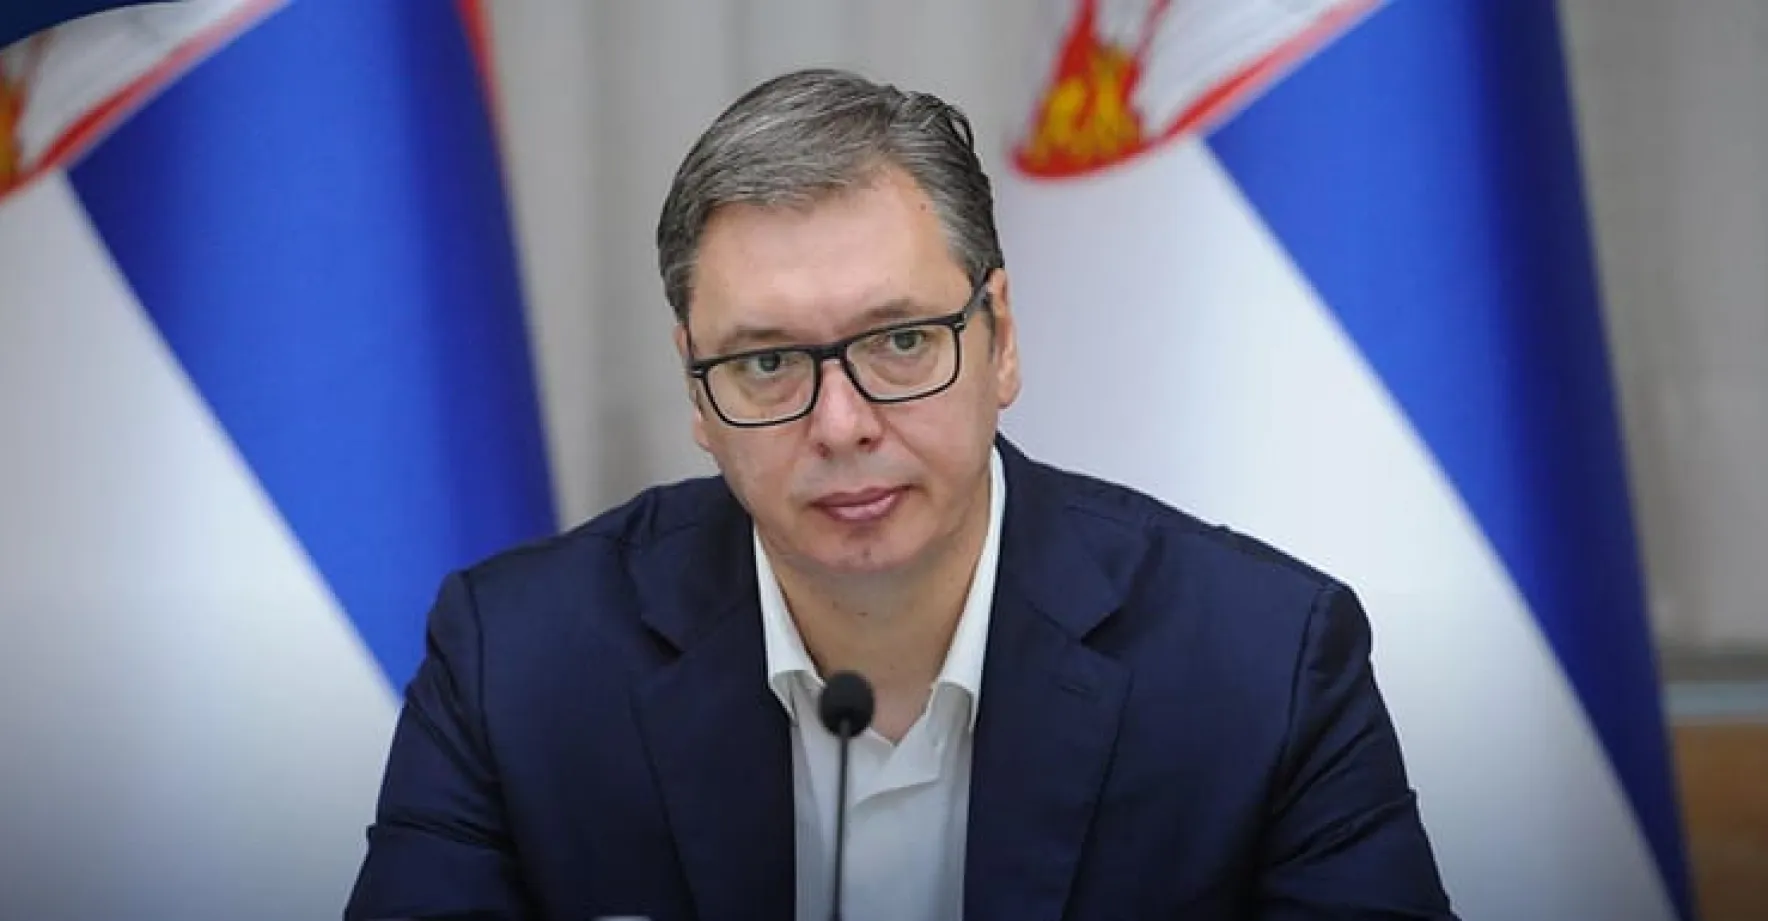 Krym je ukrajinský, prohlásil překvapivě srbský prezident Vučić